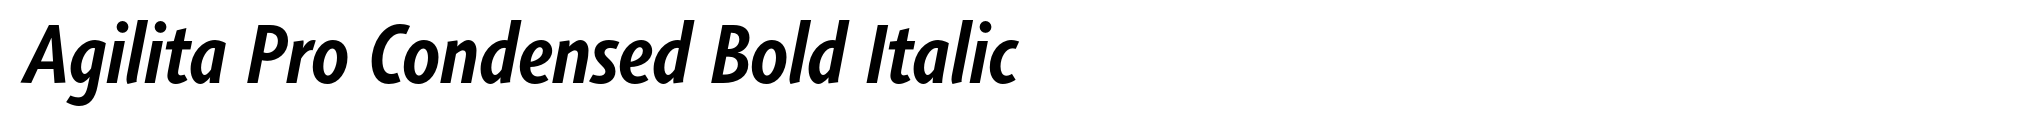 Agilita Pro Condensed Bold Italic image